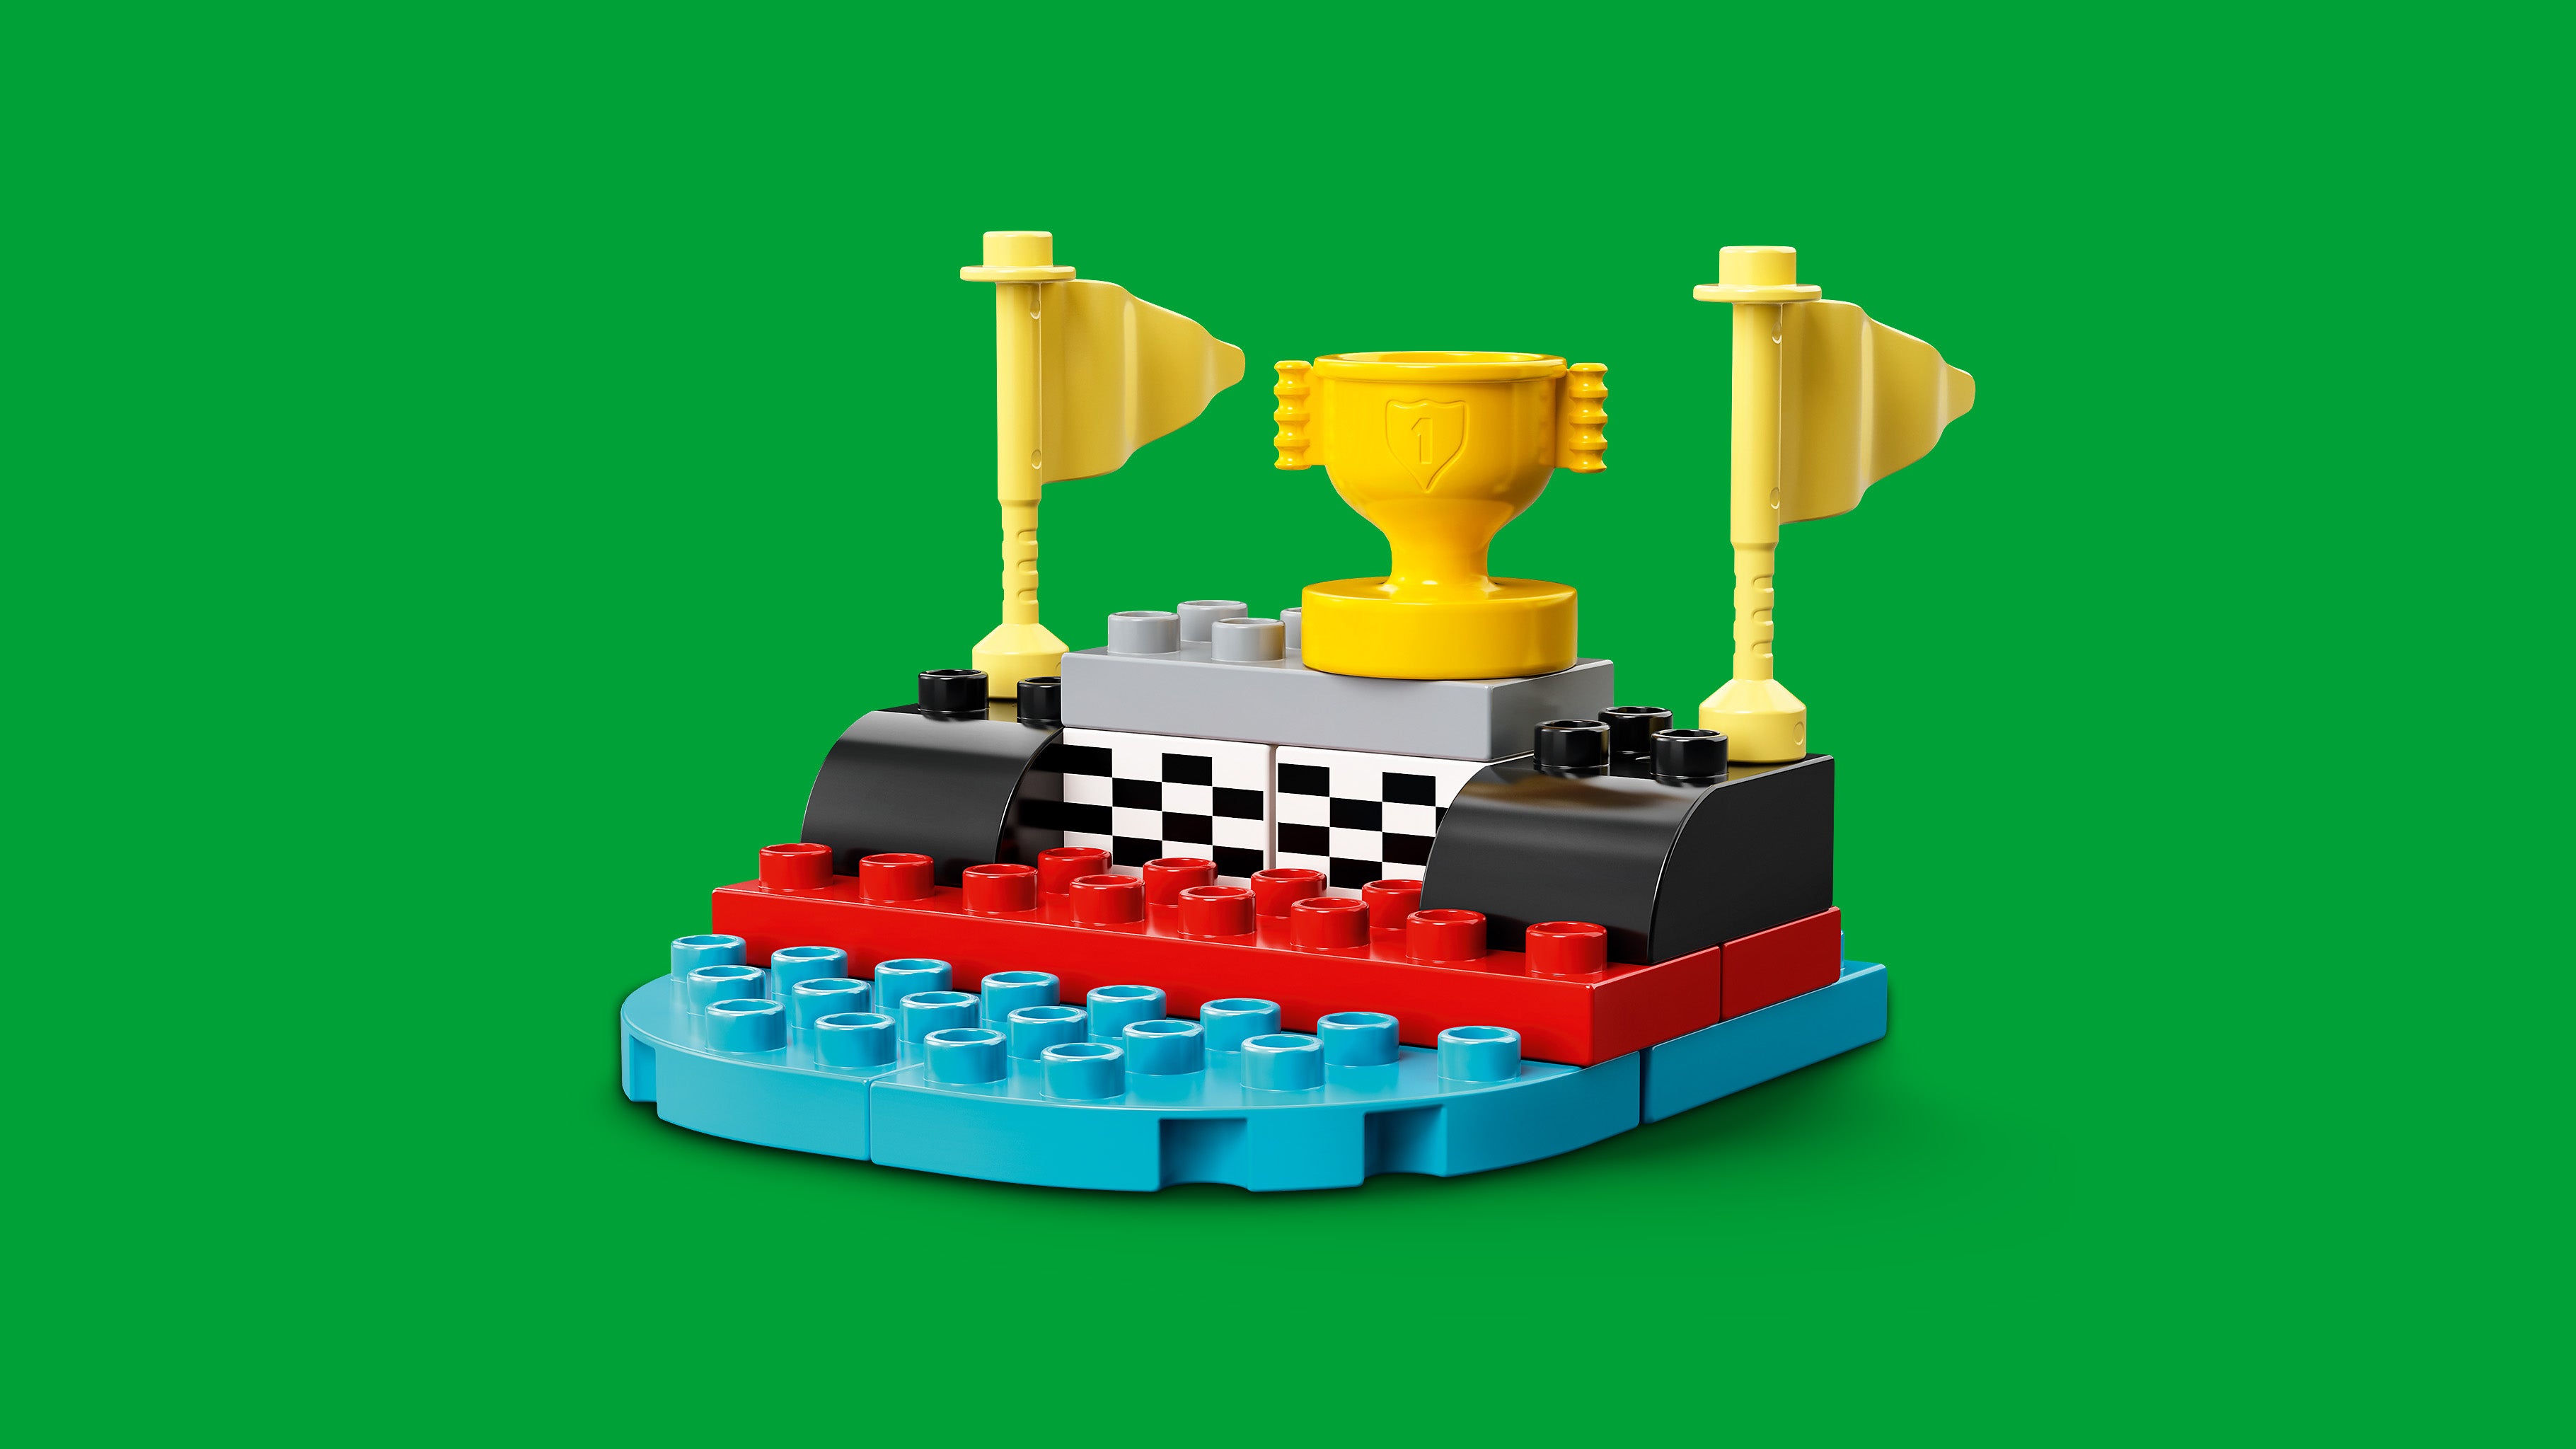 Lego 10947 Race Cars